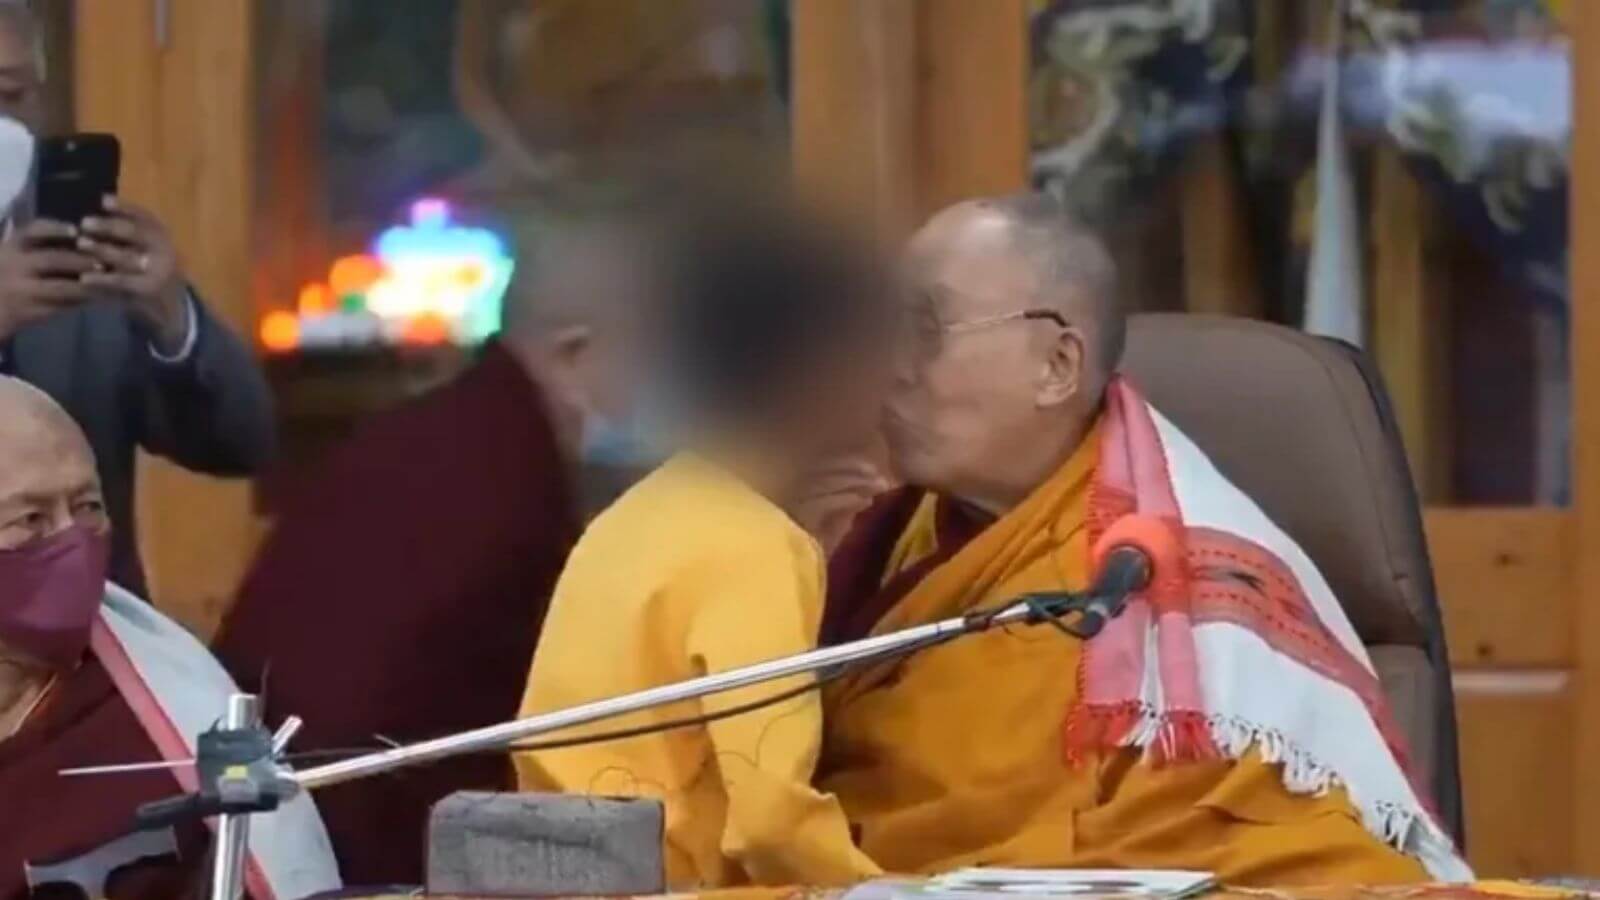 Dalai Lama pede desculpas após vídeo de beijo em boca de criança viralizar